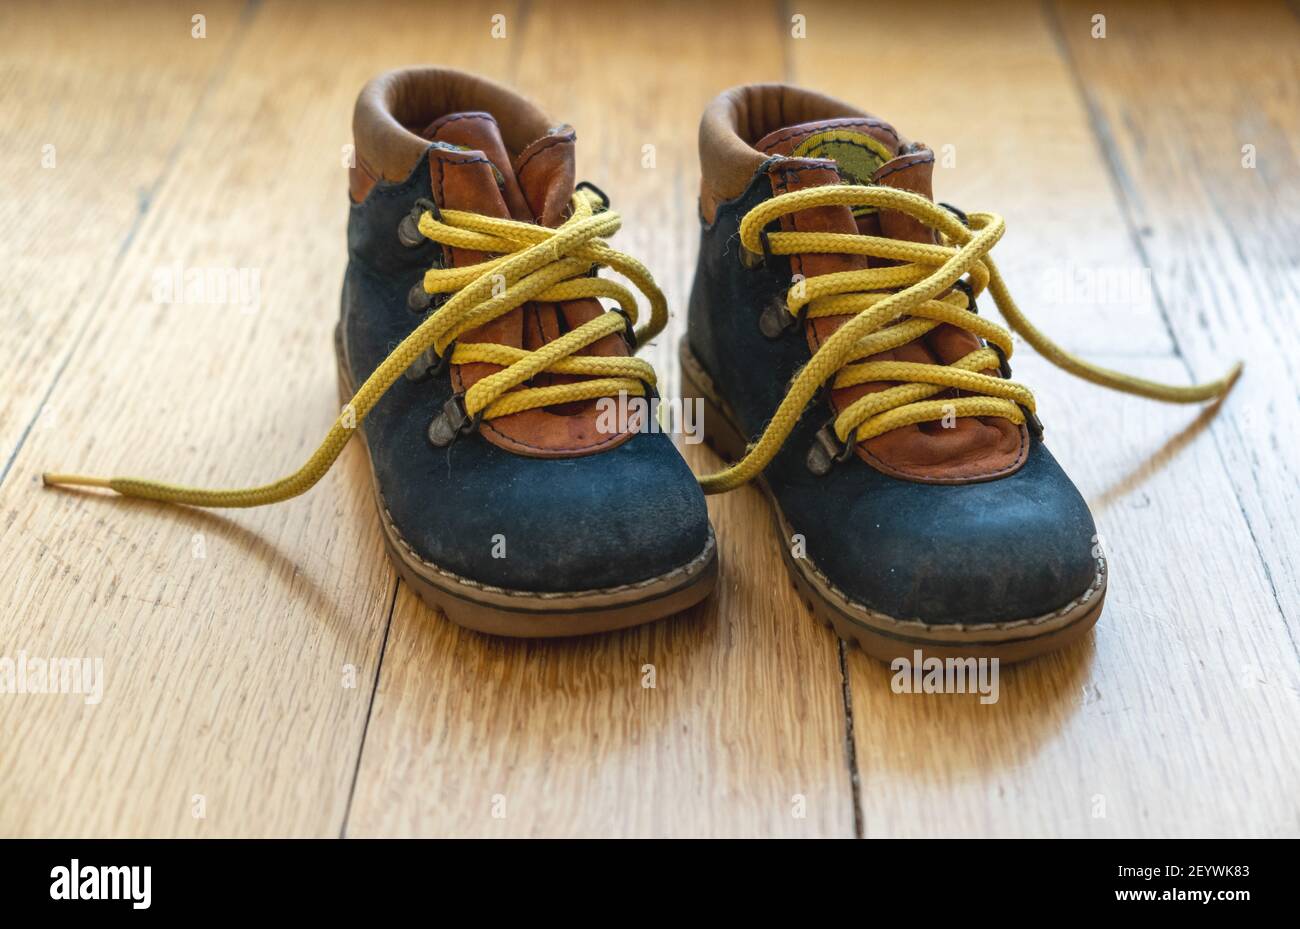 Niños botines de pequeño tamaño vista de primer plano. Zapatos de bebé cuero  de color azul con cordones de zapato amarillo sin atar en el suelo de  madera Fotografía de stock -